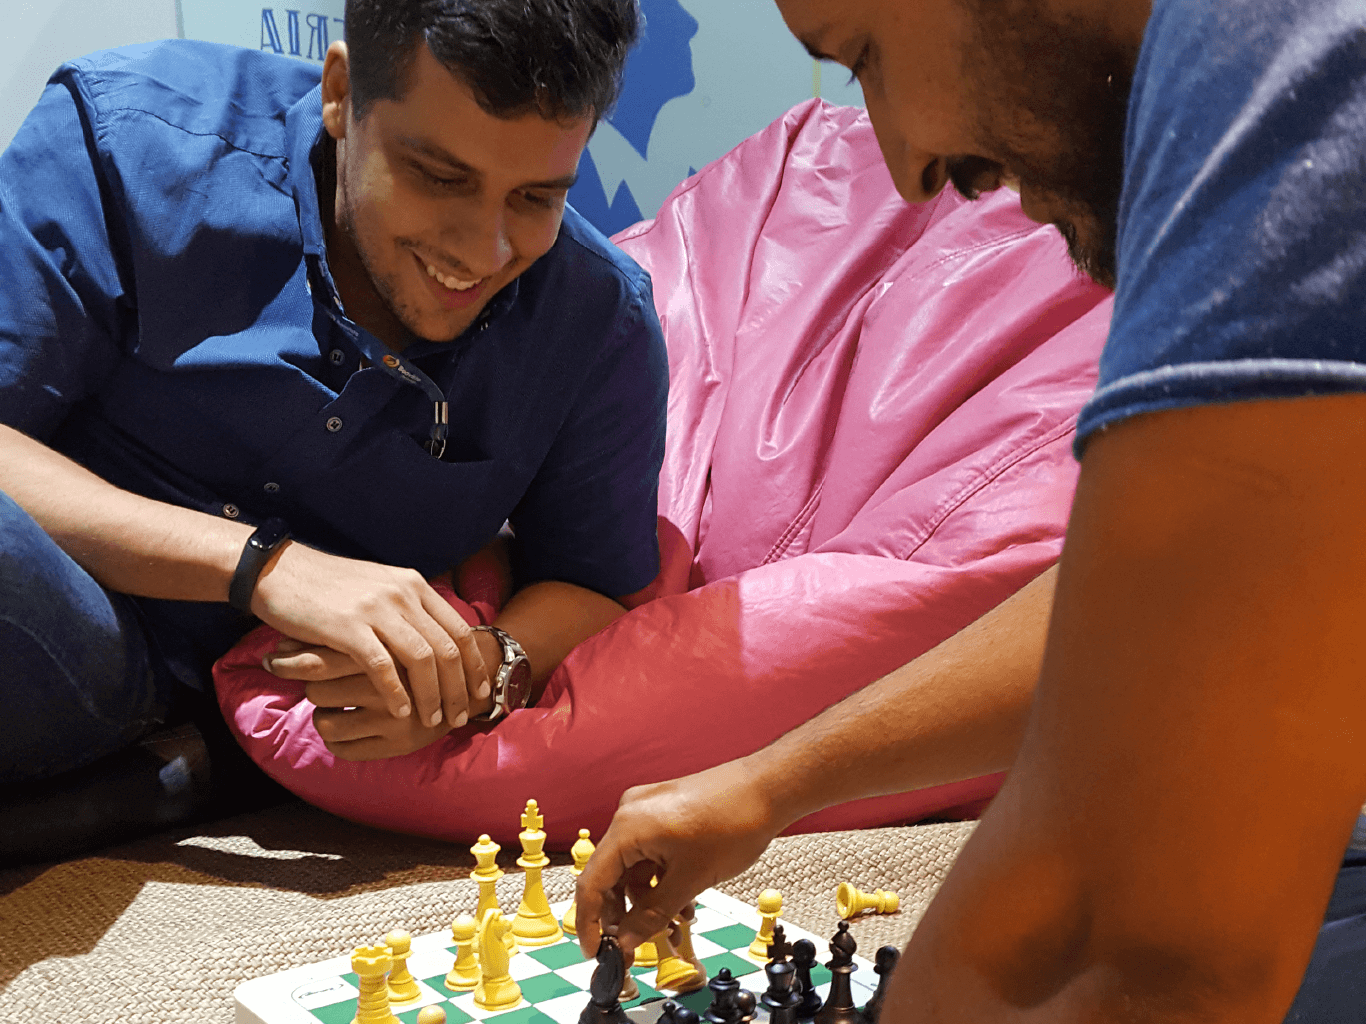 Colaboradores jogando xadrez